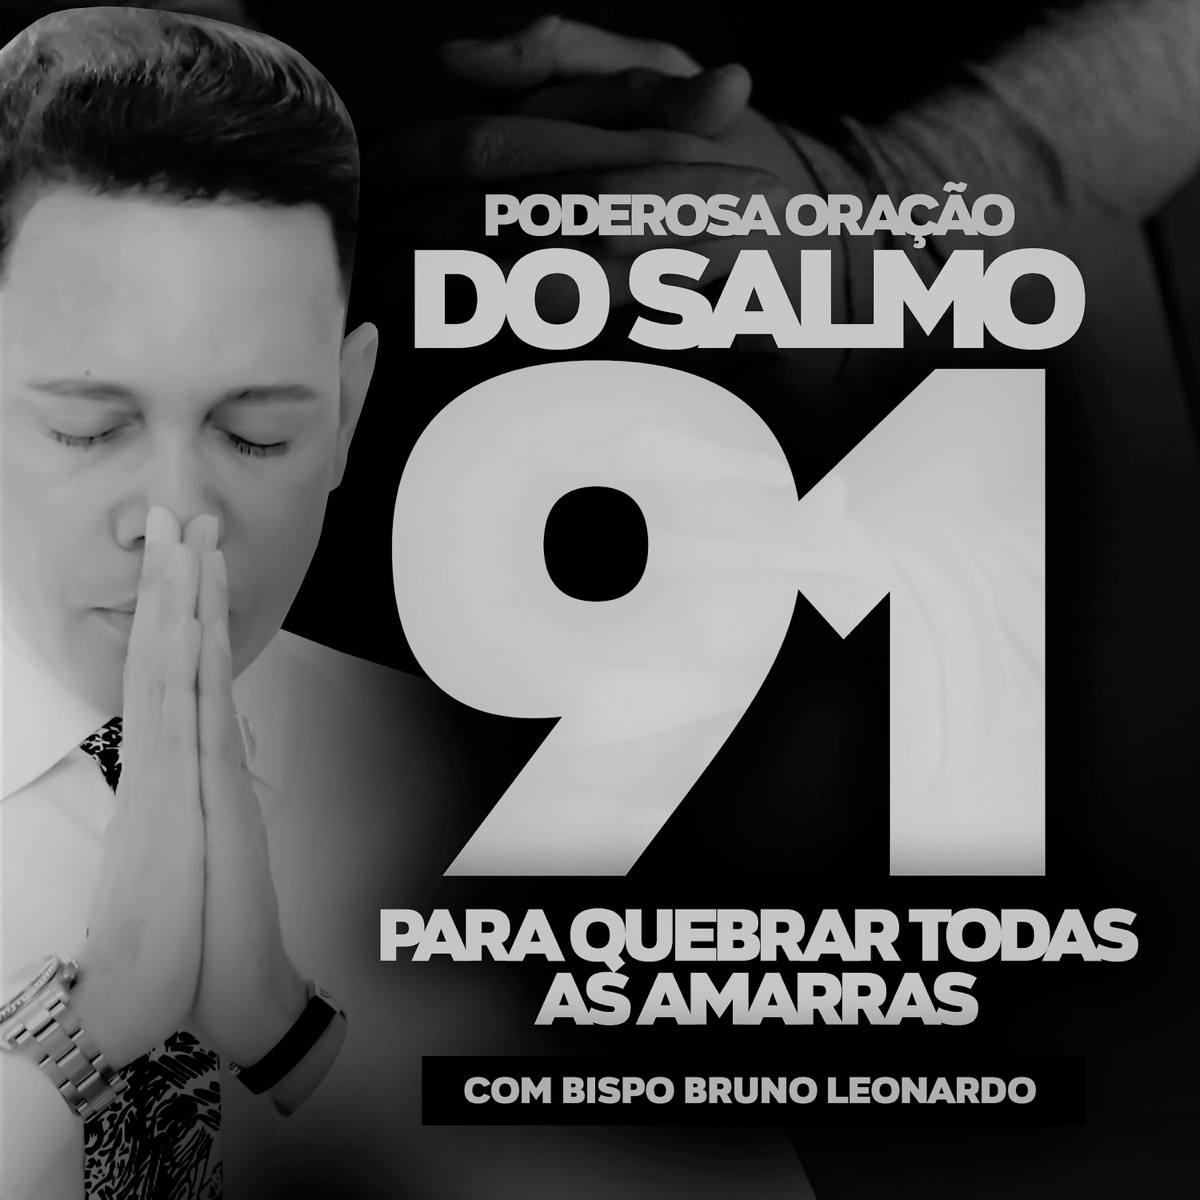 Oração da Noite Com o Salmo 91, Pt. 4 by Bispo Bruno Leonardo on   Music Unlimited